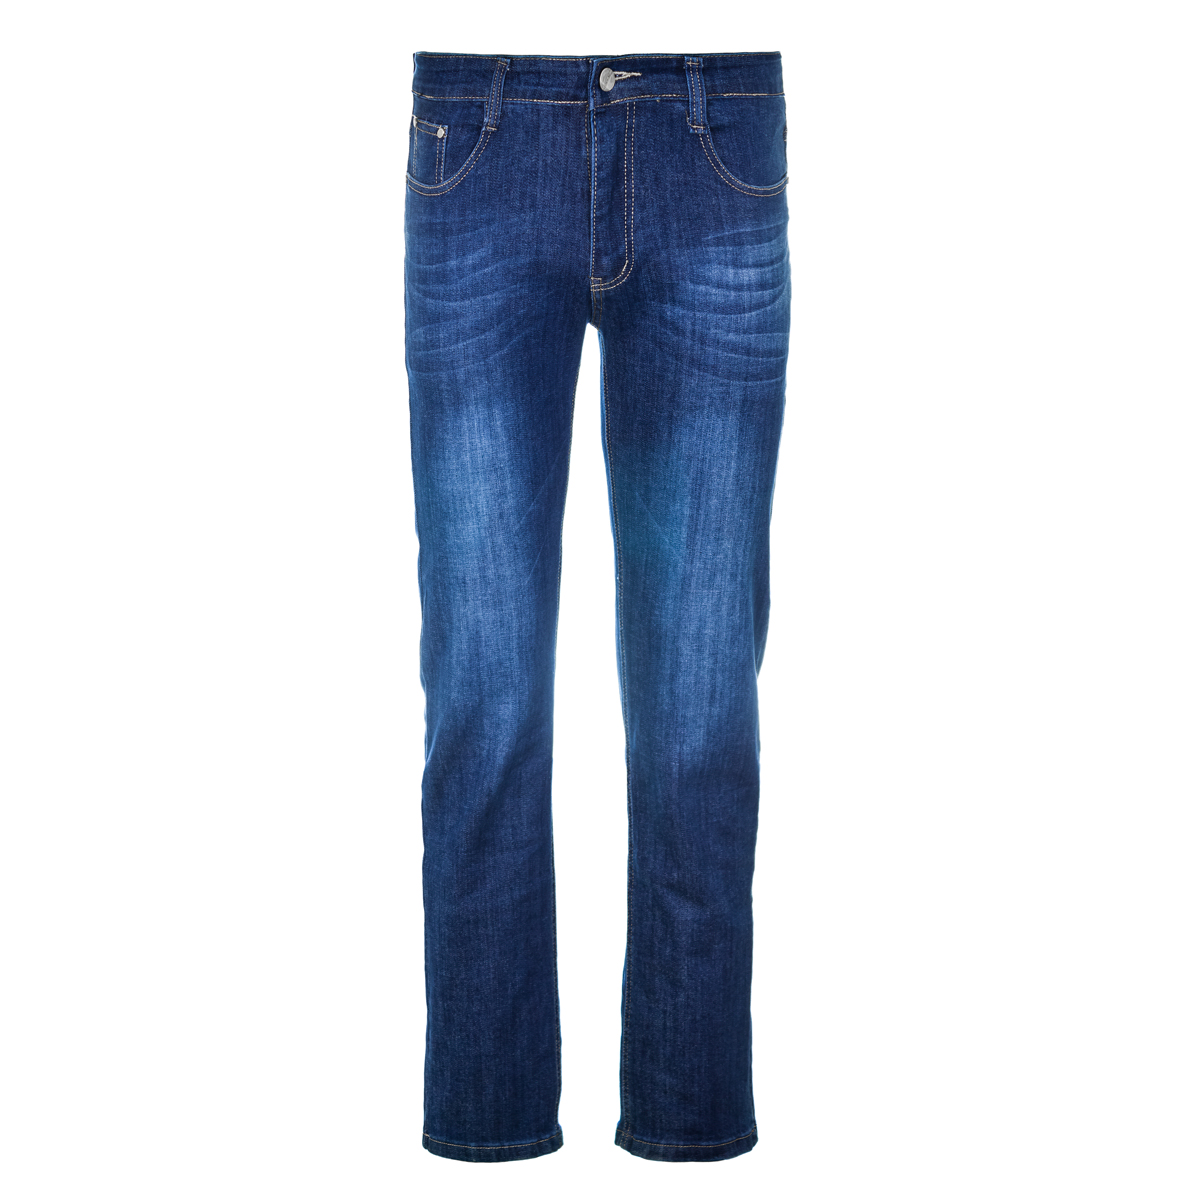 Муж. джинсы арт. 12-0094 Синий р. 31 Китай, размер 31